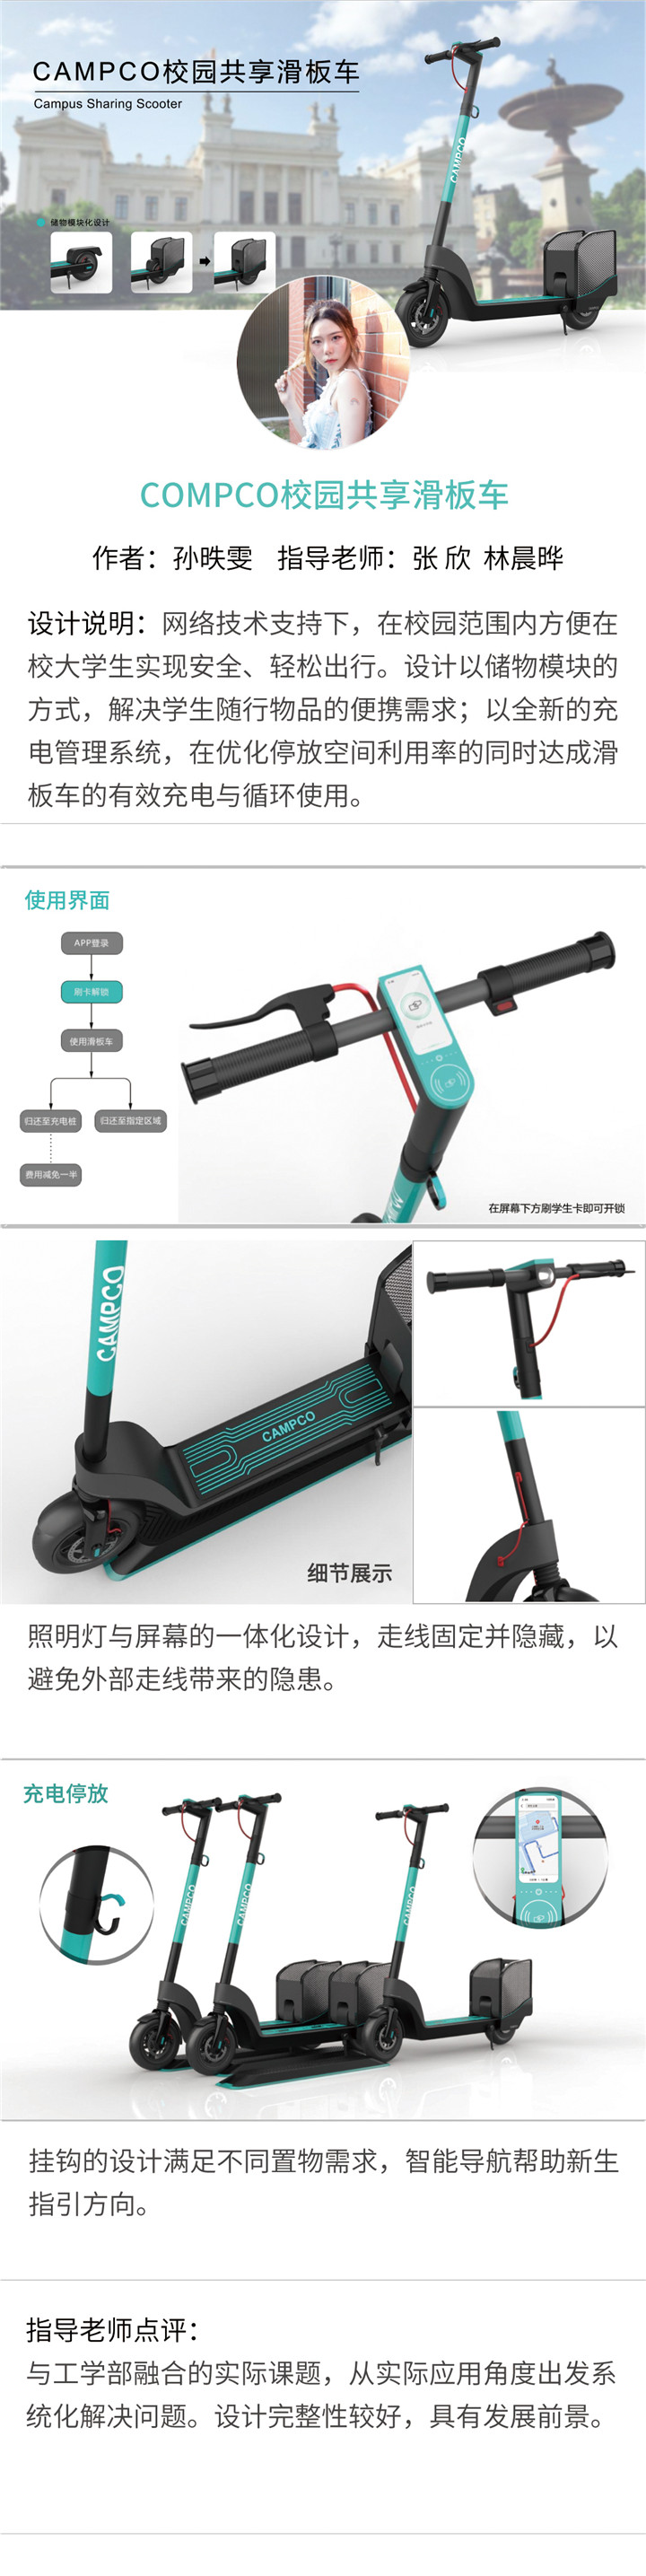 产品设计——CAMPCO校园共享滑板车-设计中国